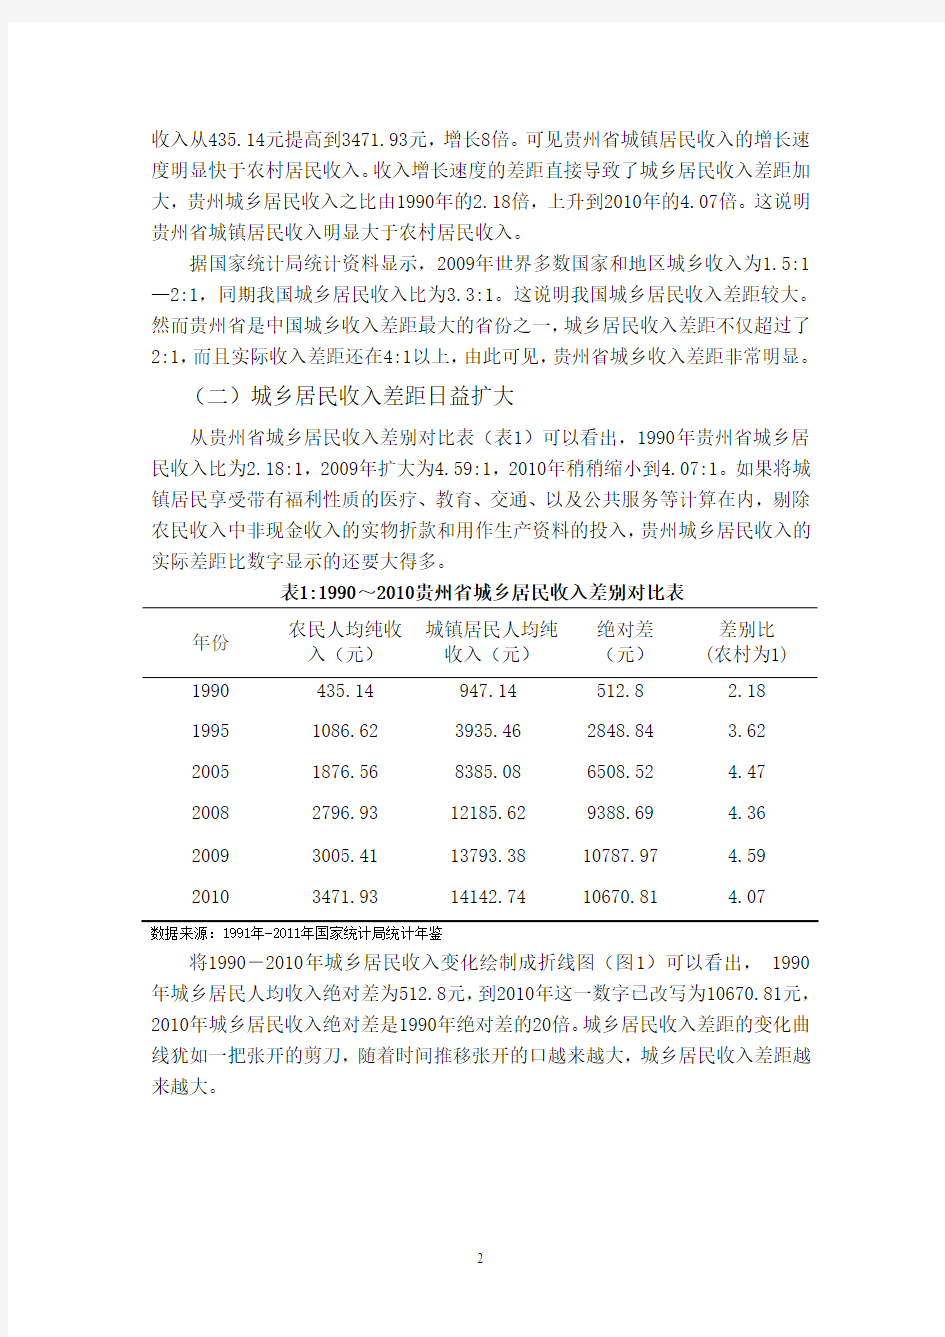 贵州省城乡居民收入差距扩大的原因及对策探析